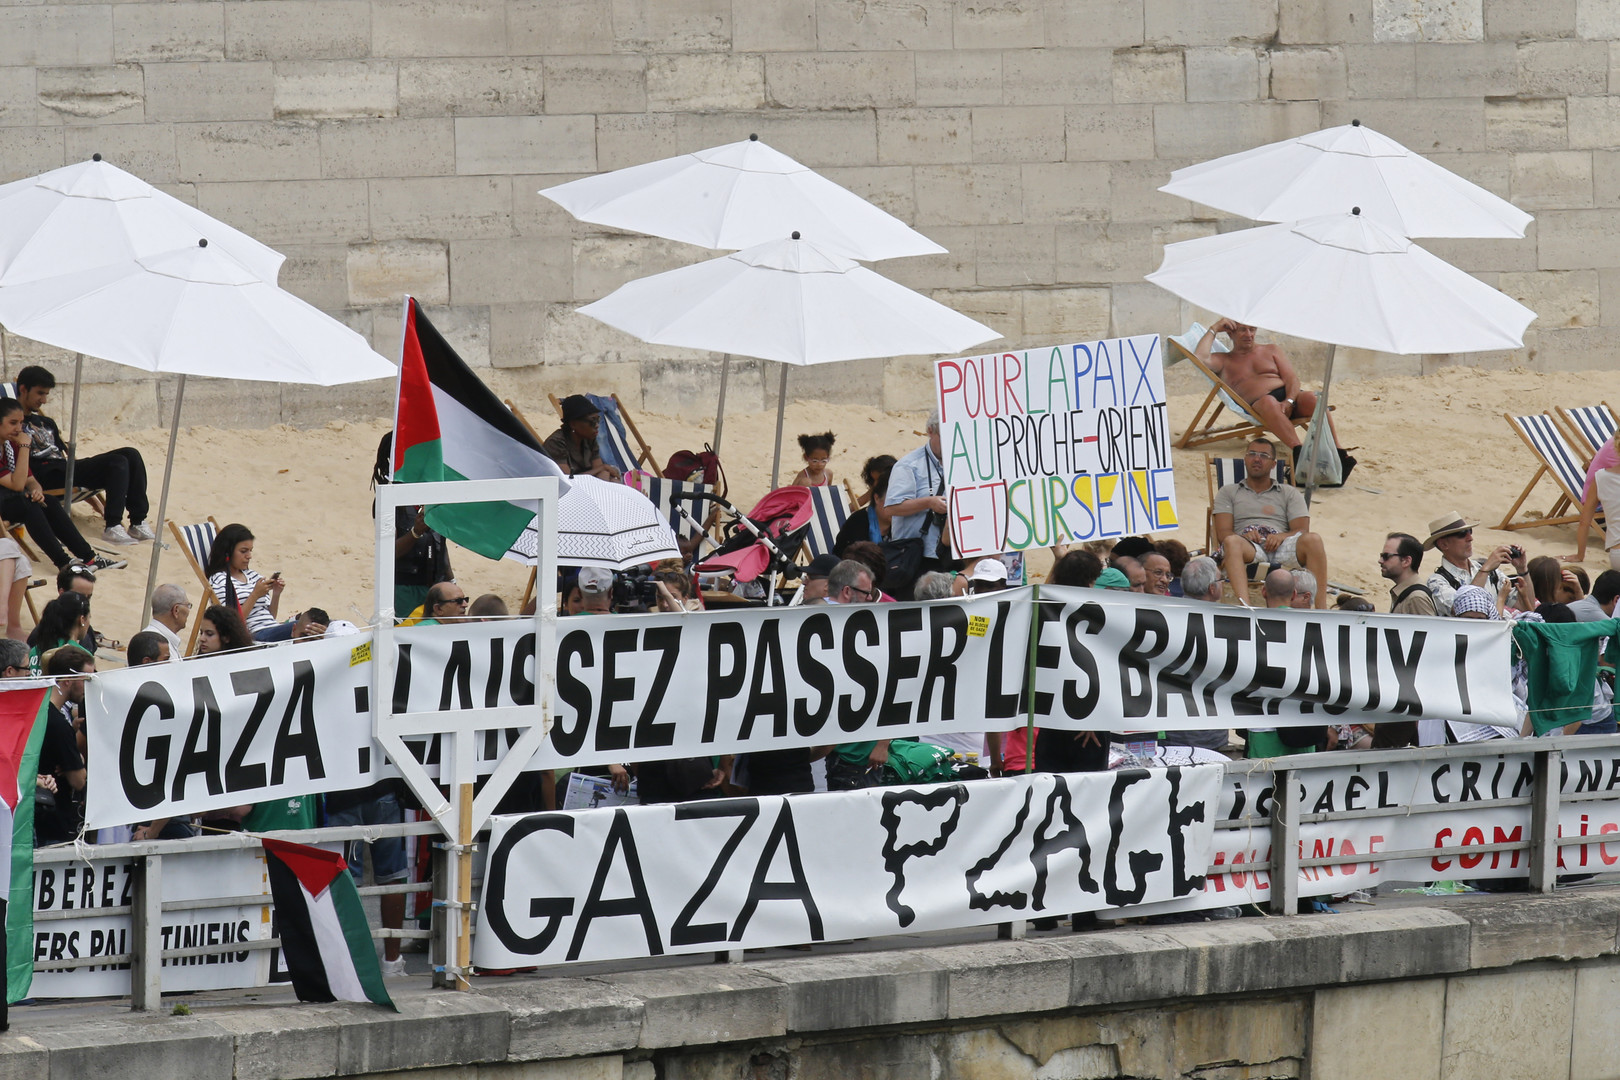 «Gaza: Laissez passer les bateaux», peut-on lire sur des pancartes des membres de l’association Euro Palestine